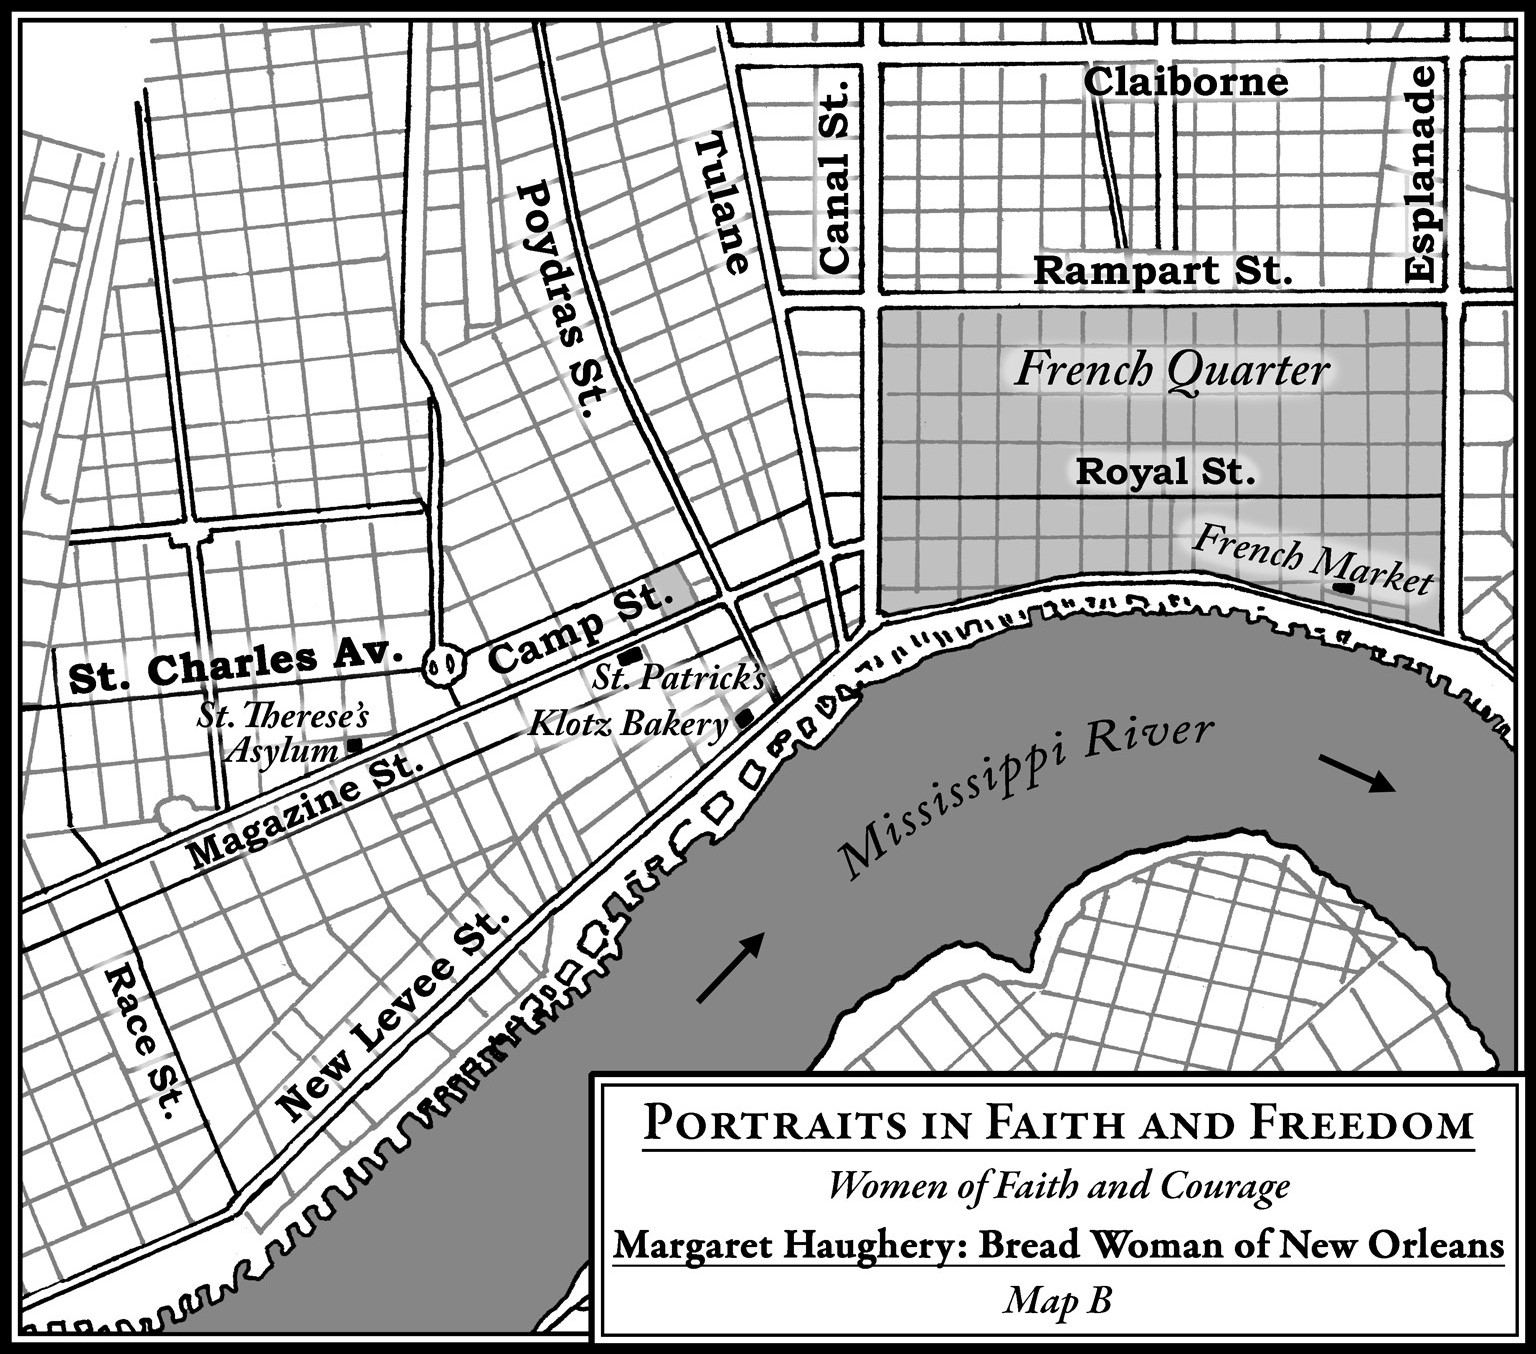 Margaret Haughery Map 2